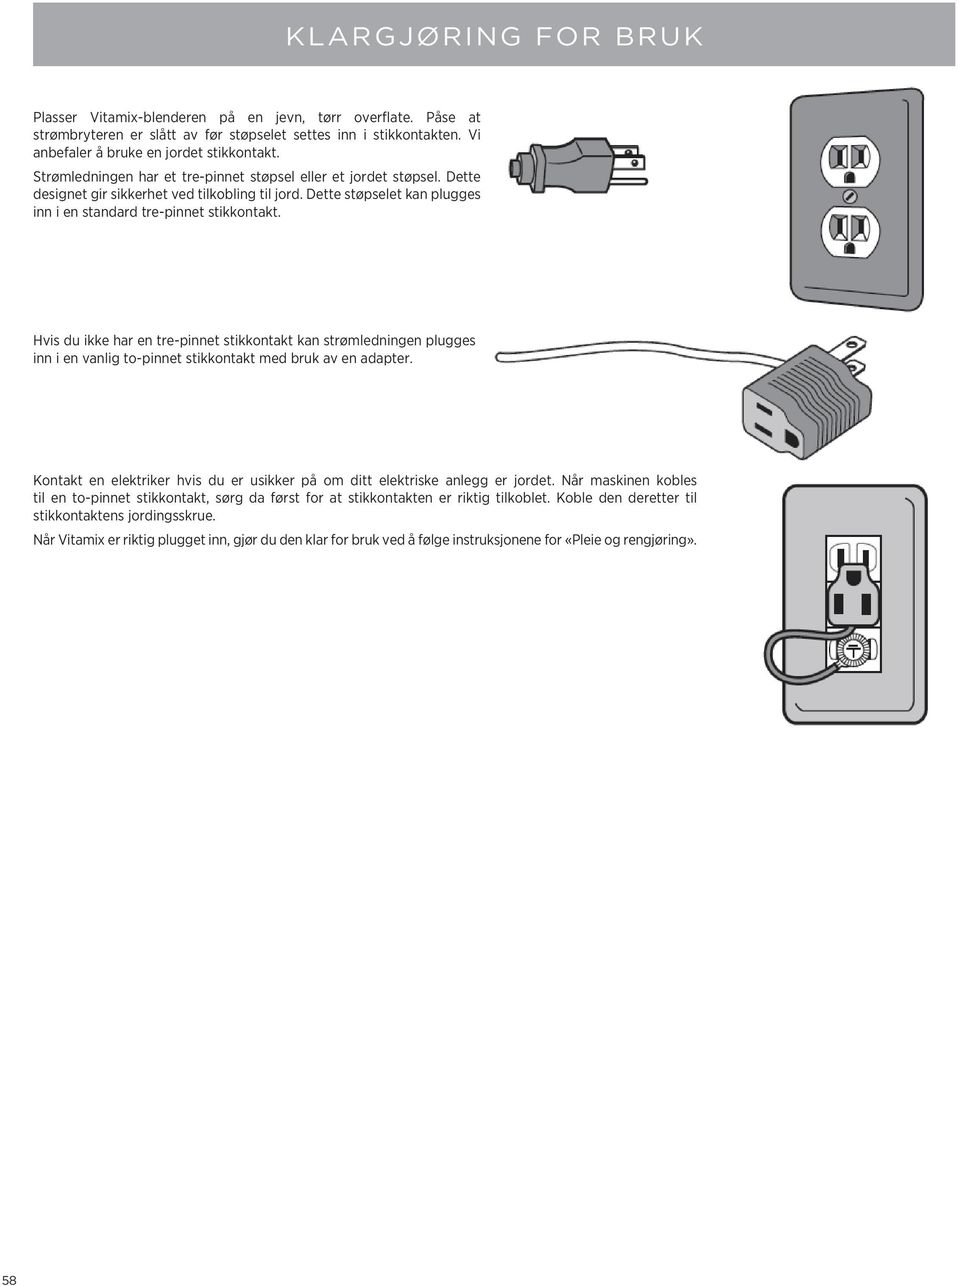 Hvis du ikke har en tre-pinnet stikkontakt kan strømledningen plugges inn i en vanlig to-pinnet stikkontakt med bruk av en adapter.